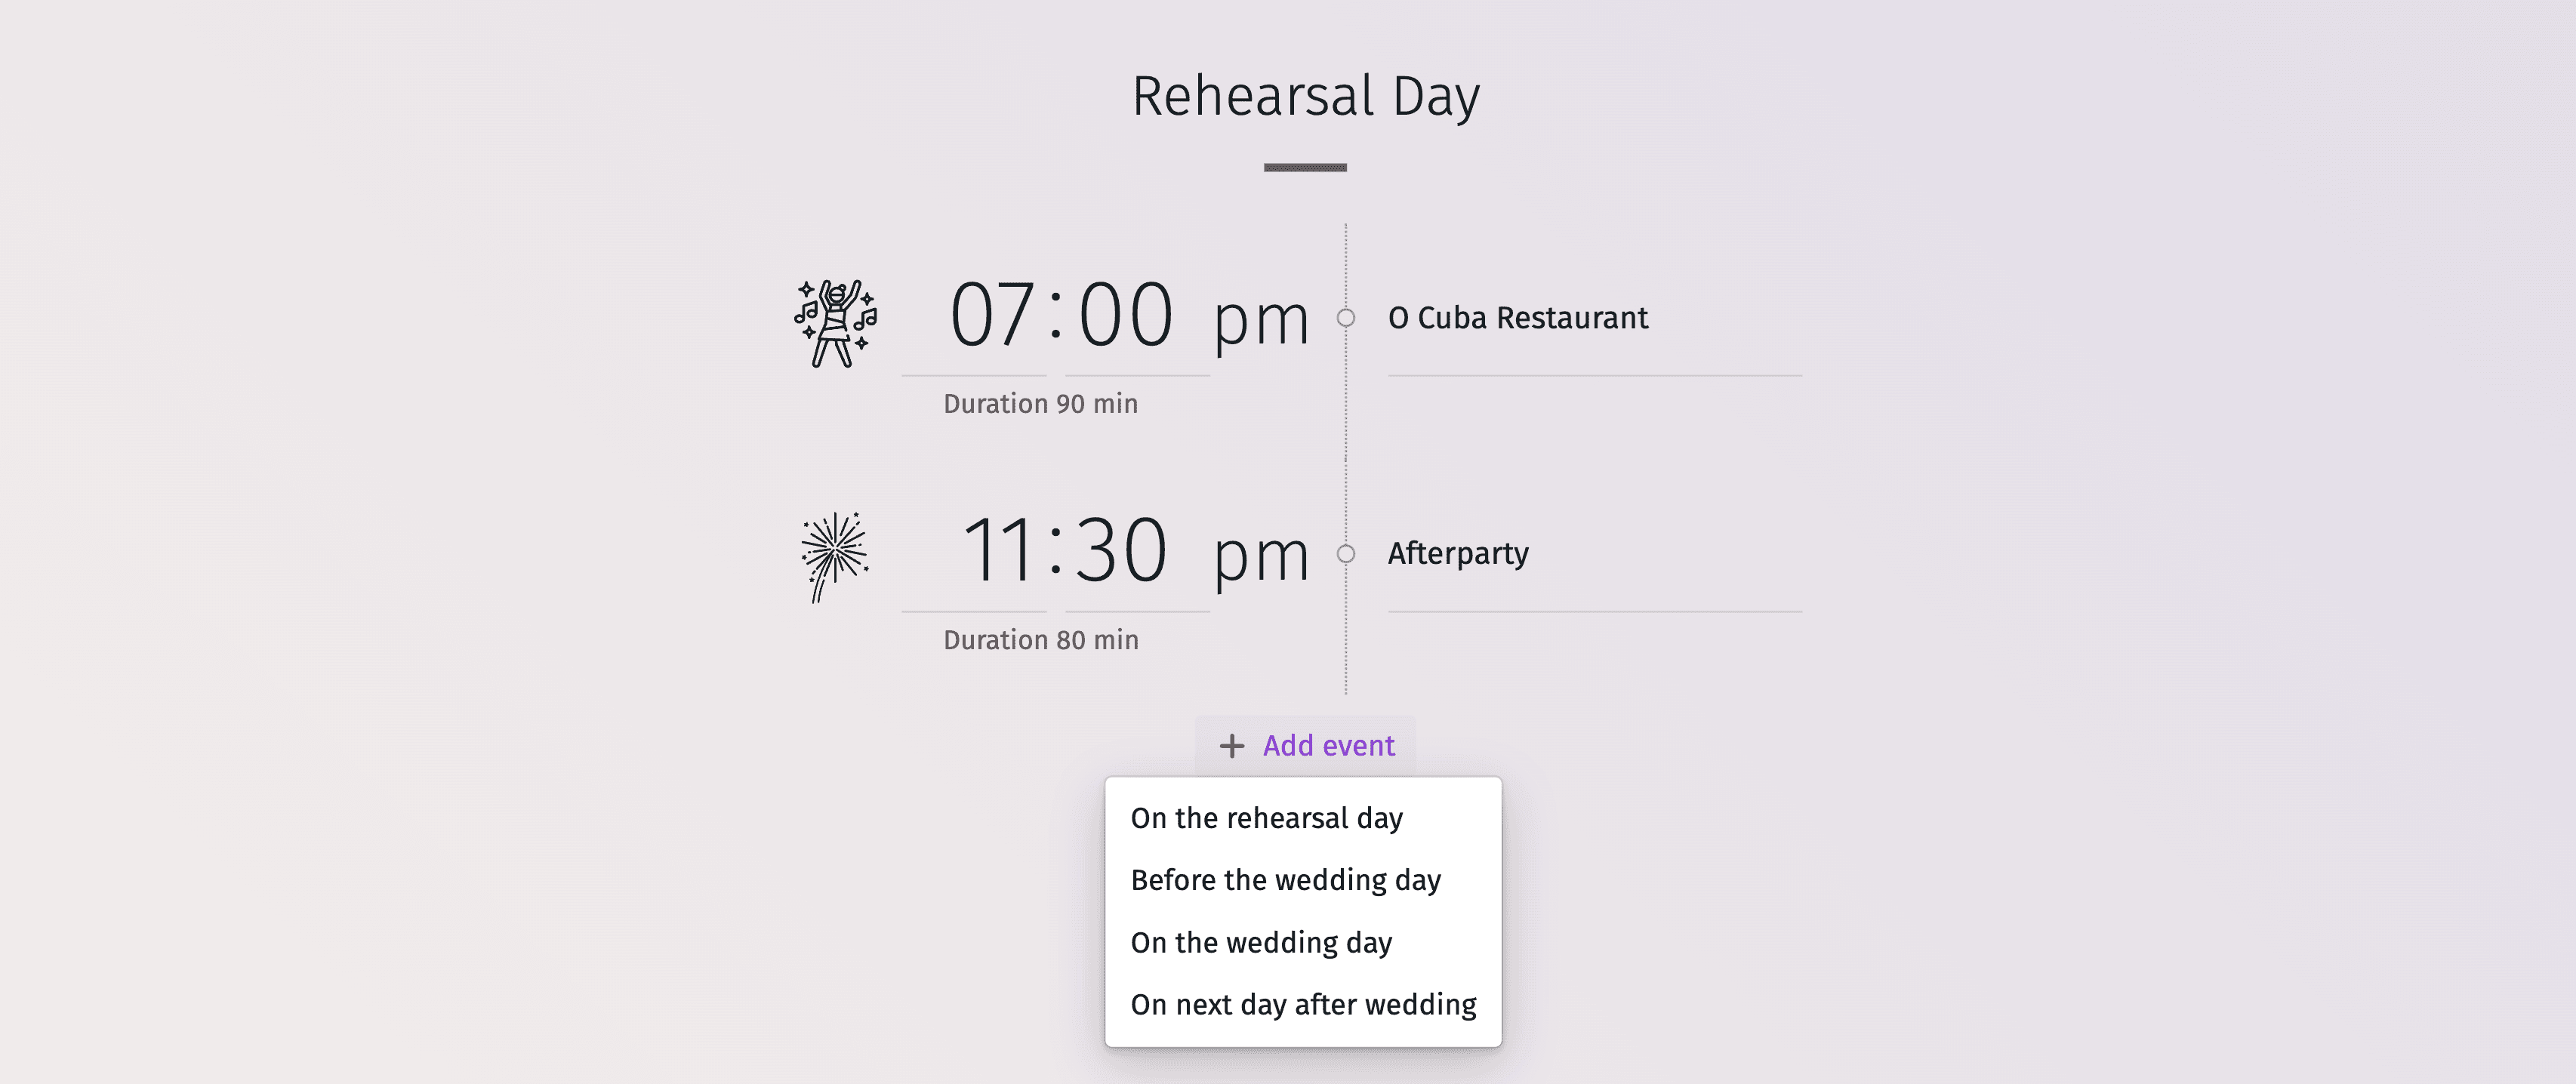 Obrázok zobrazujúci chronologický plán svadobného dňa od ranných príprav po večerné oslavy